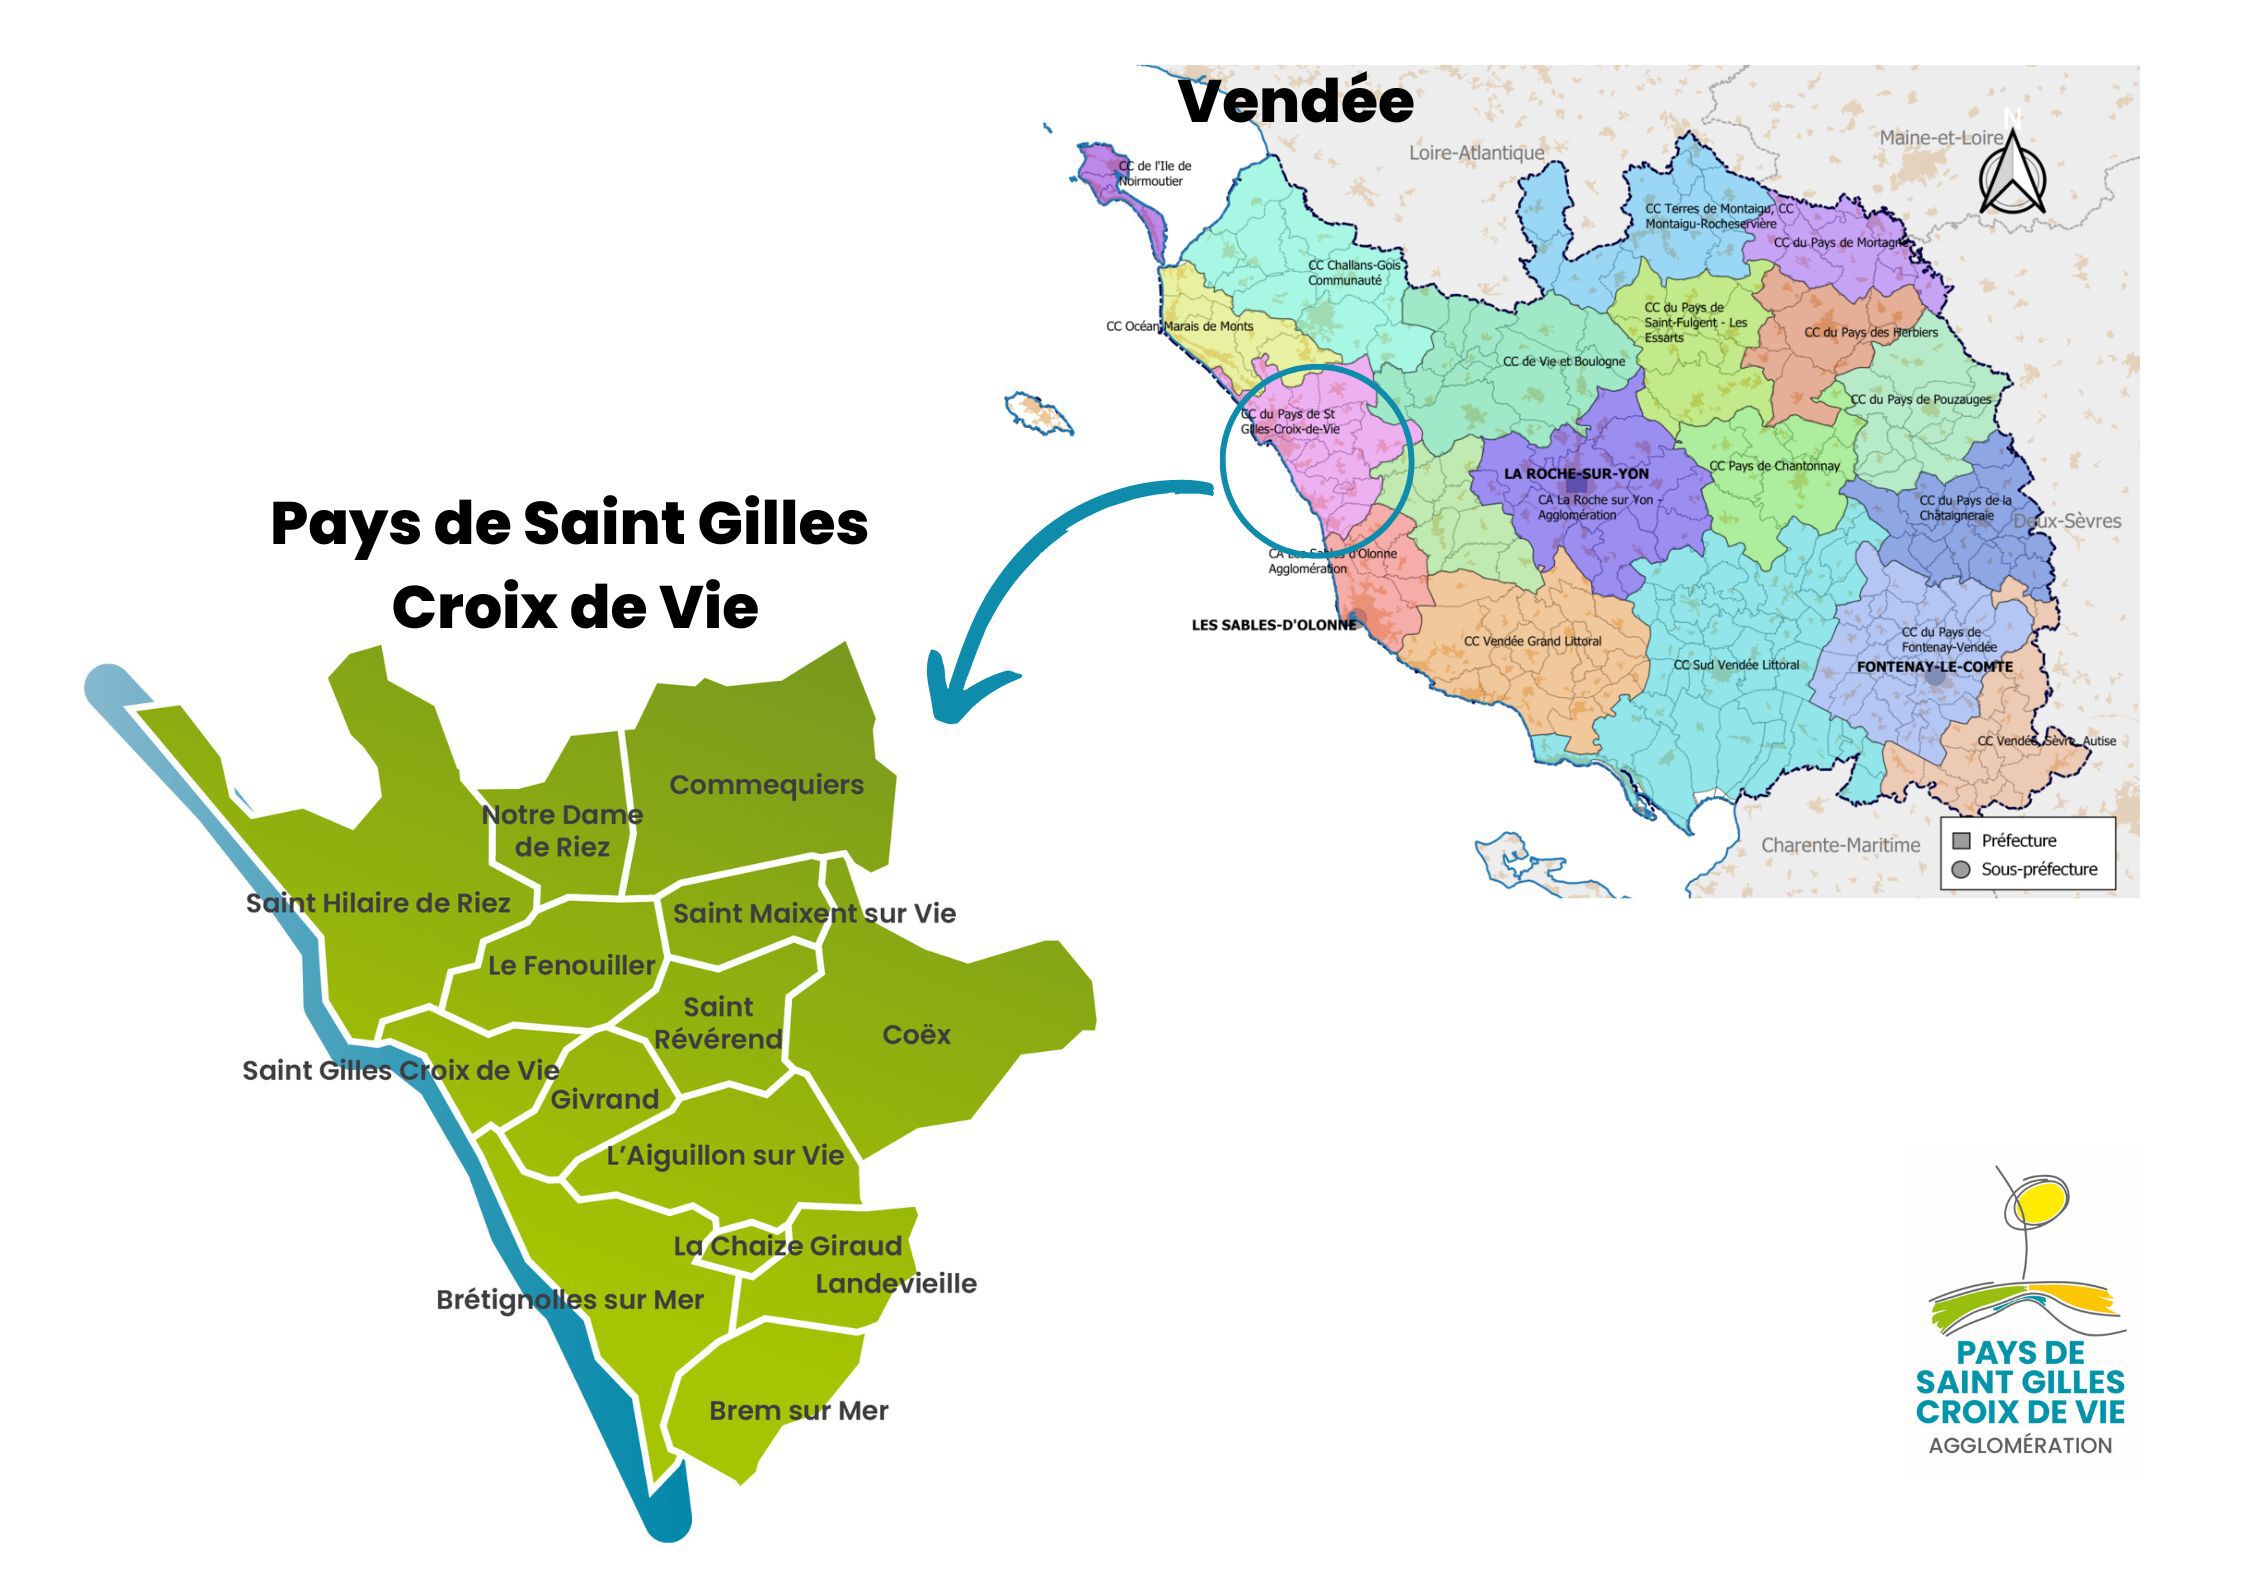 Pays de Saint Gilles Croix de Vie (1)